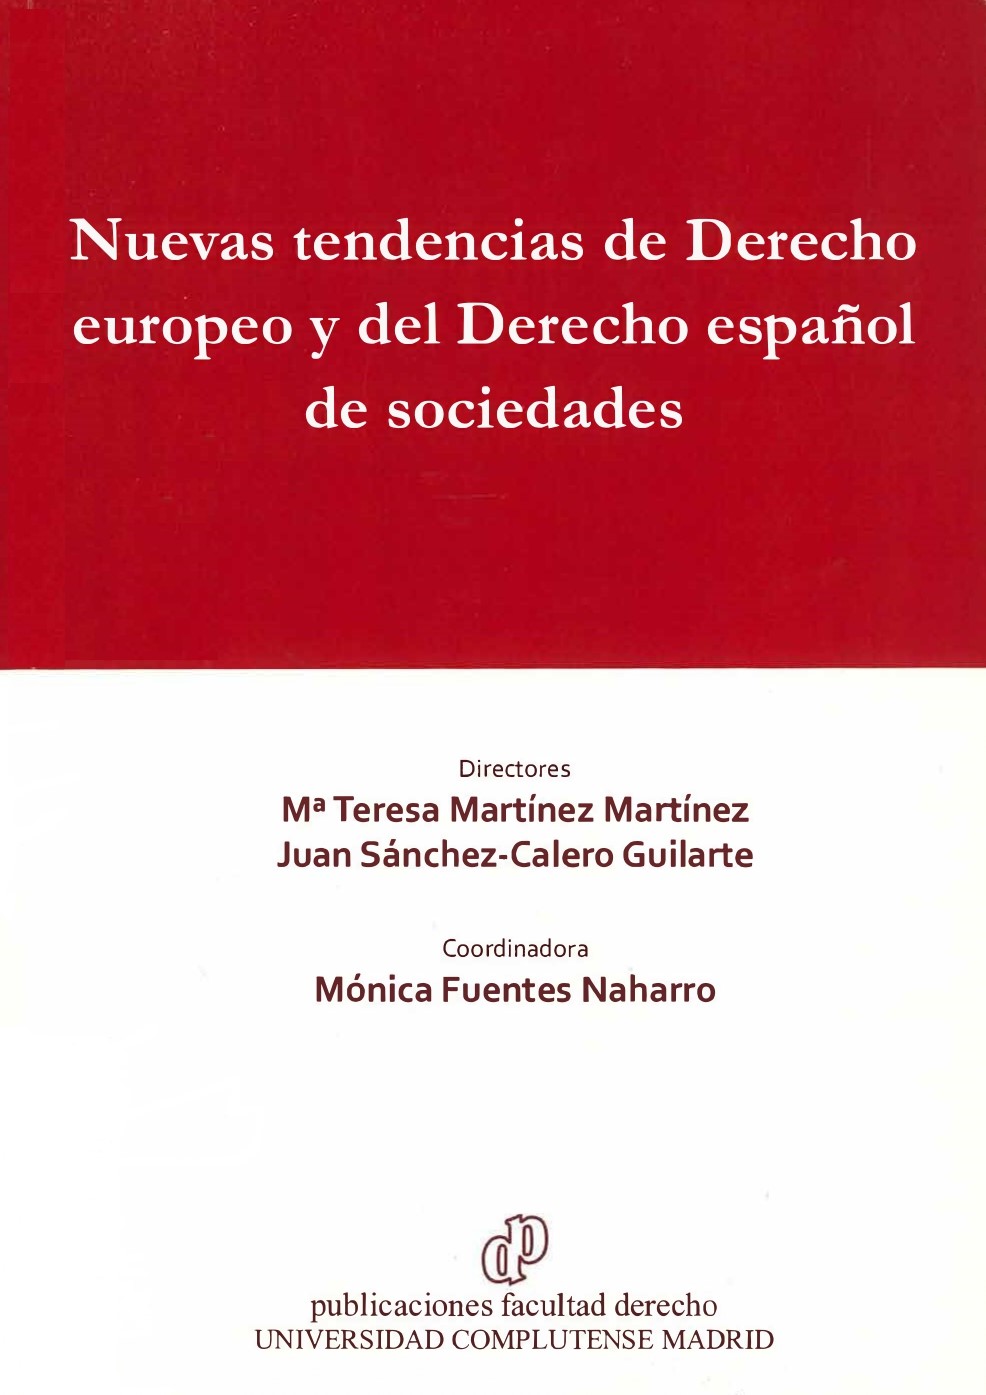 Imagen de portada del libro Nuevas tendencias de Derecho europeo y del Derecho español de sociedades